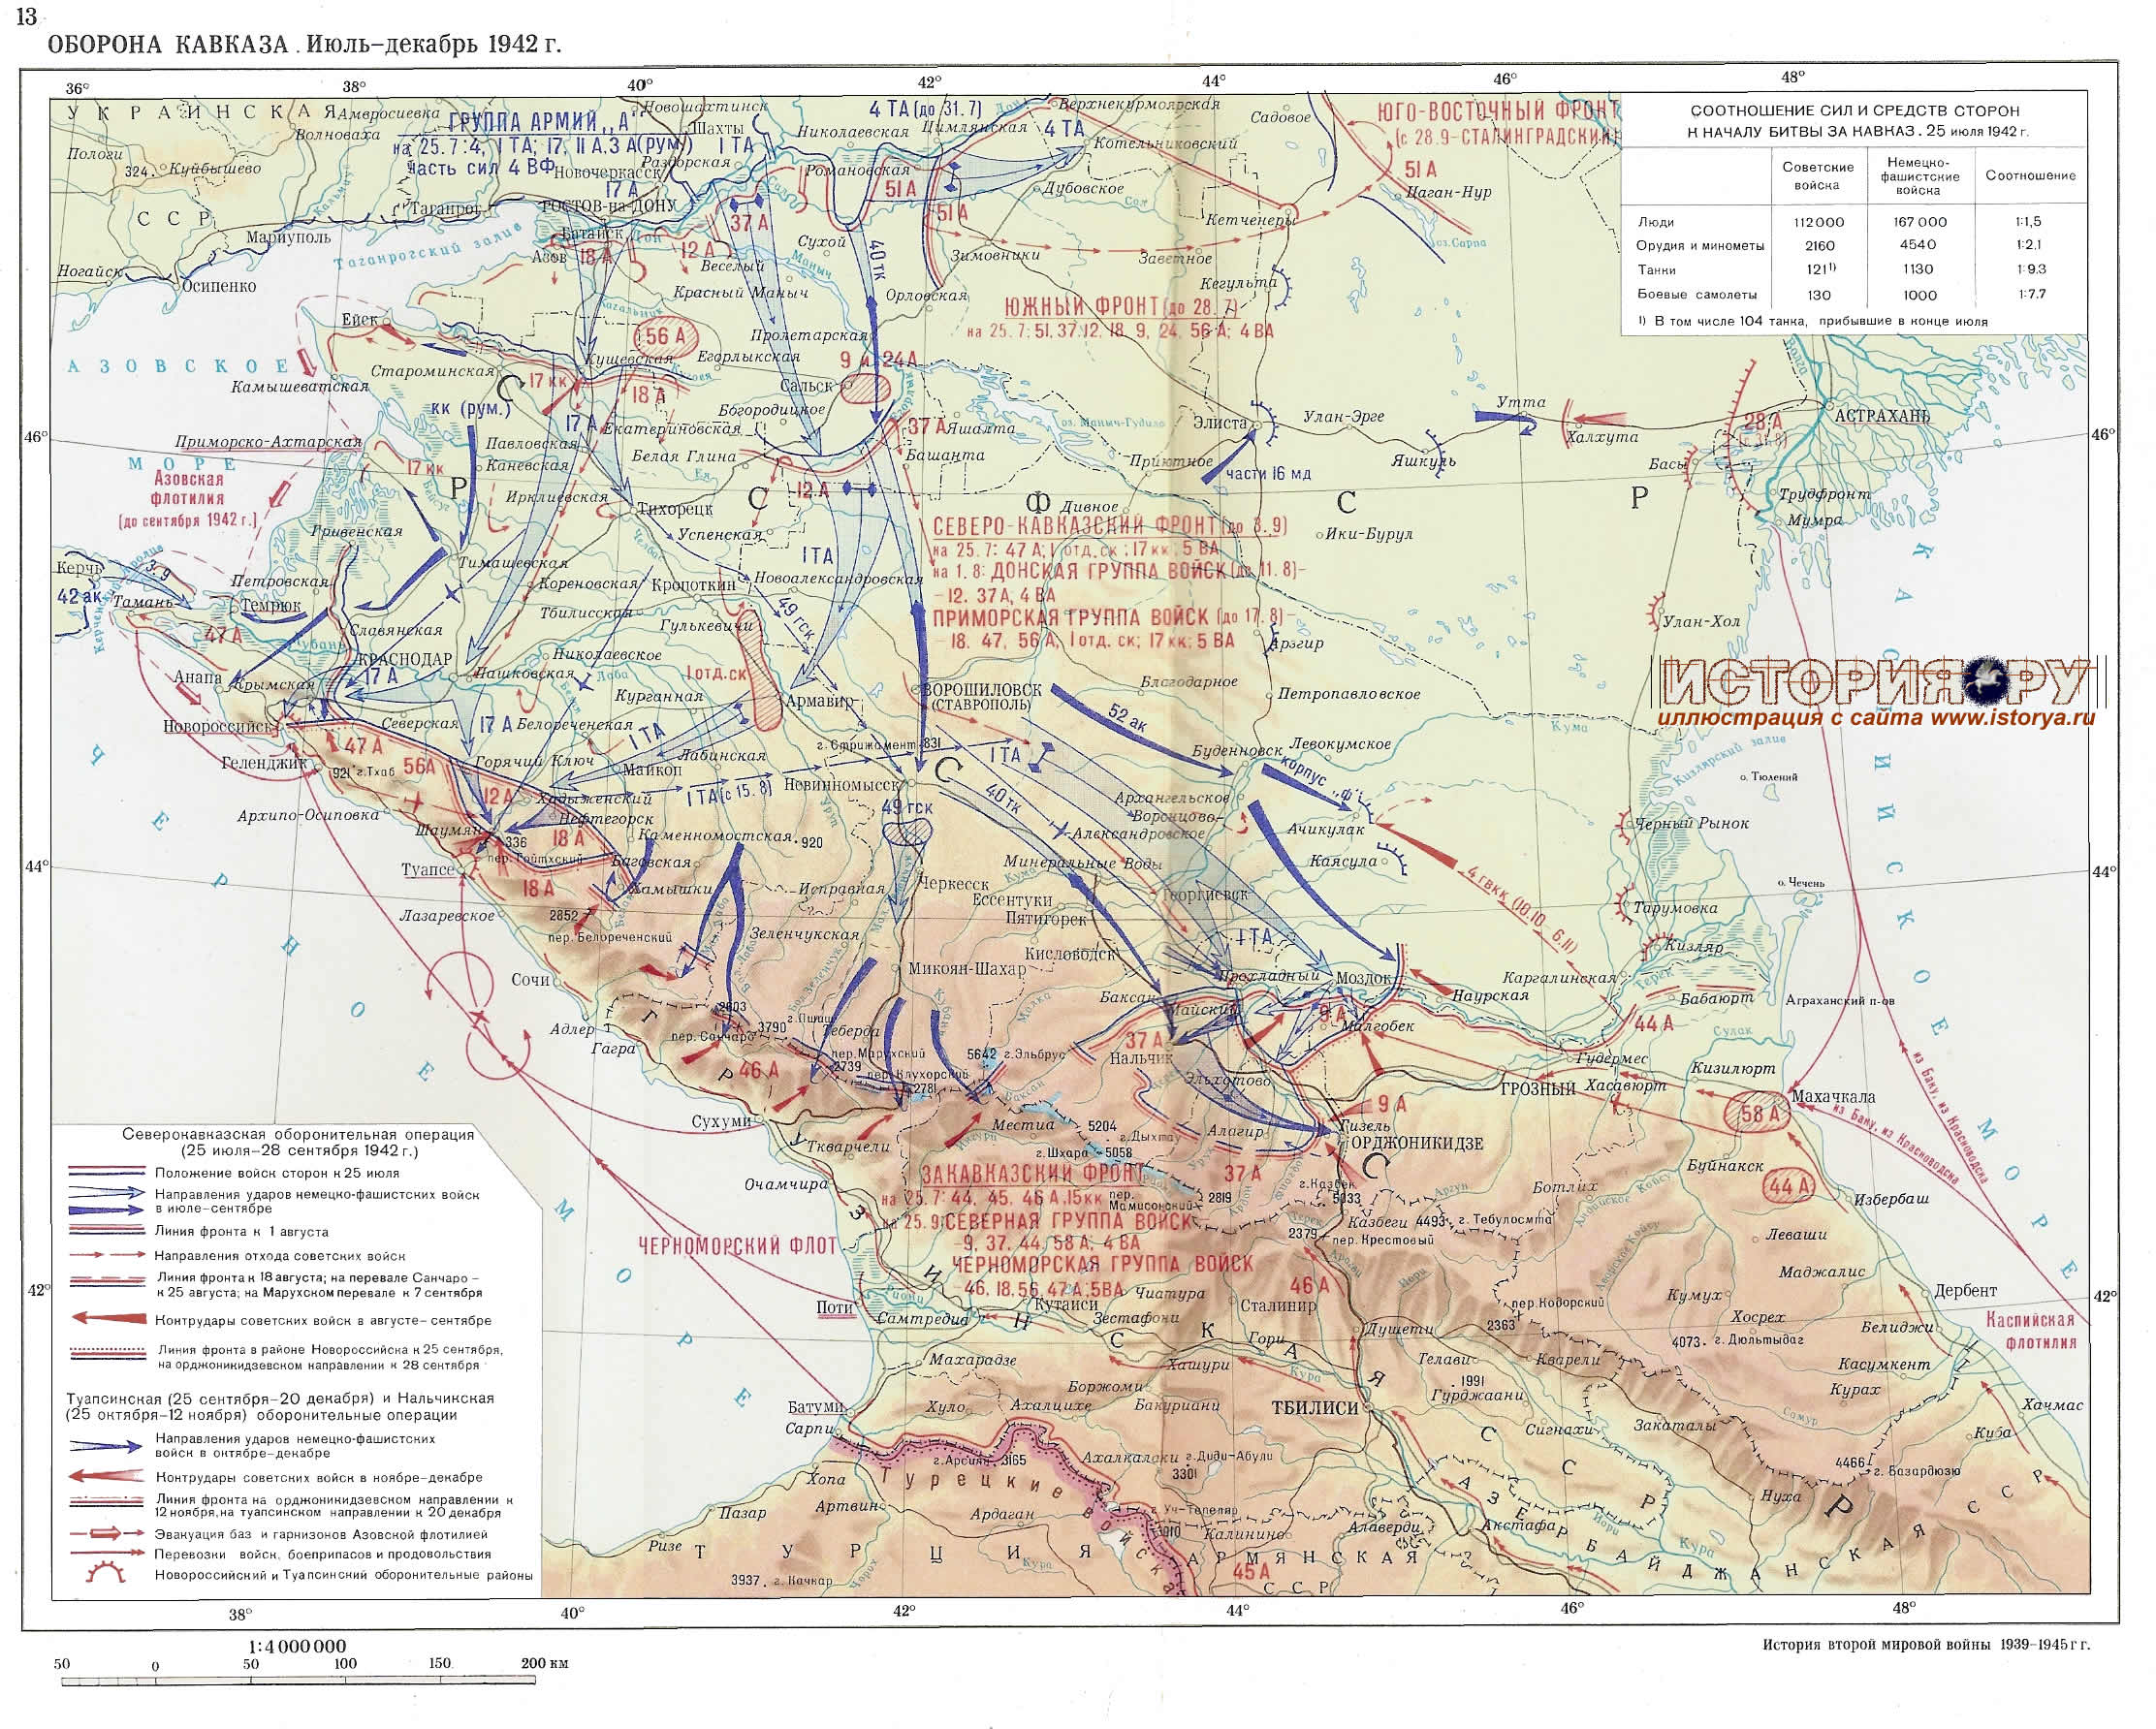 Оборона Кавказа. Июль-декабрь 1942г.